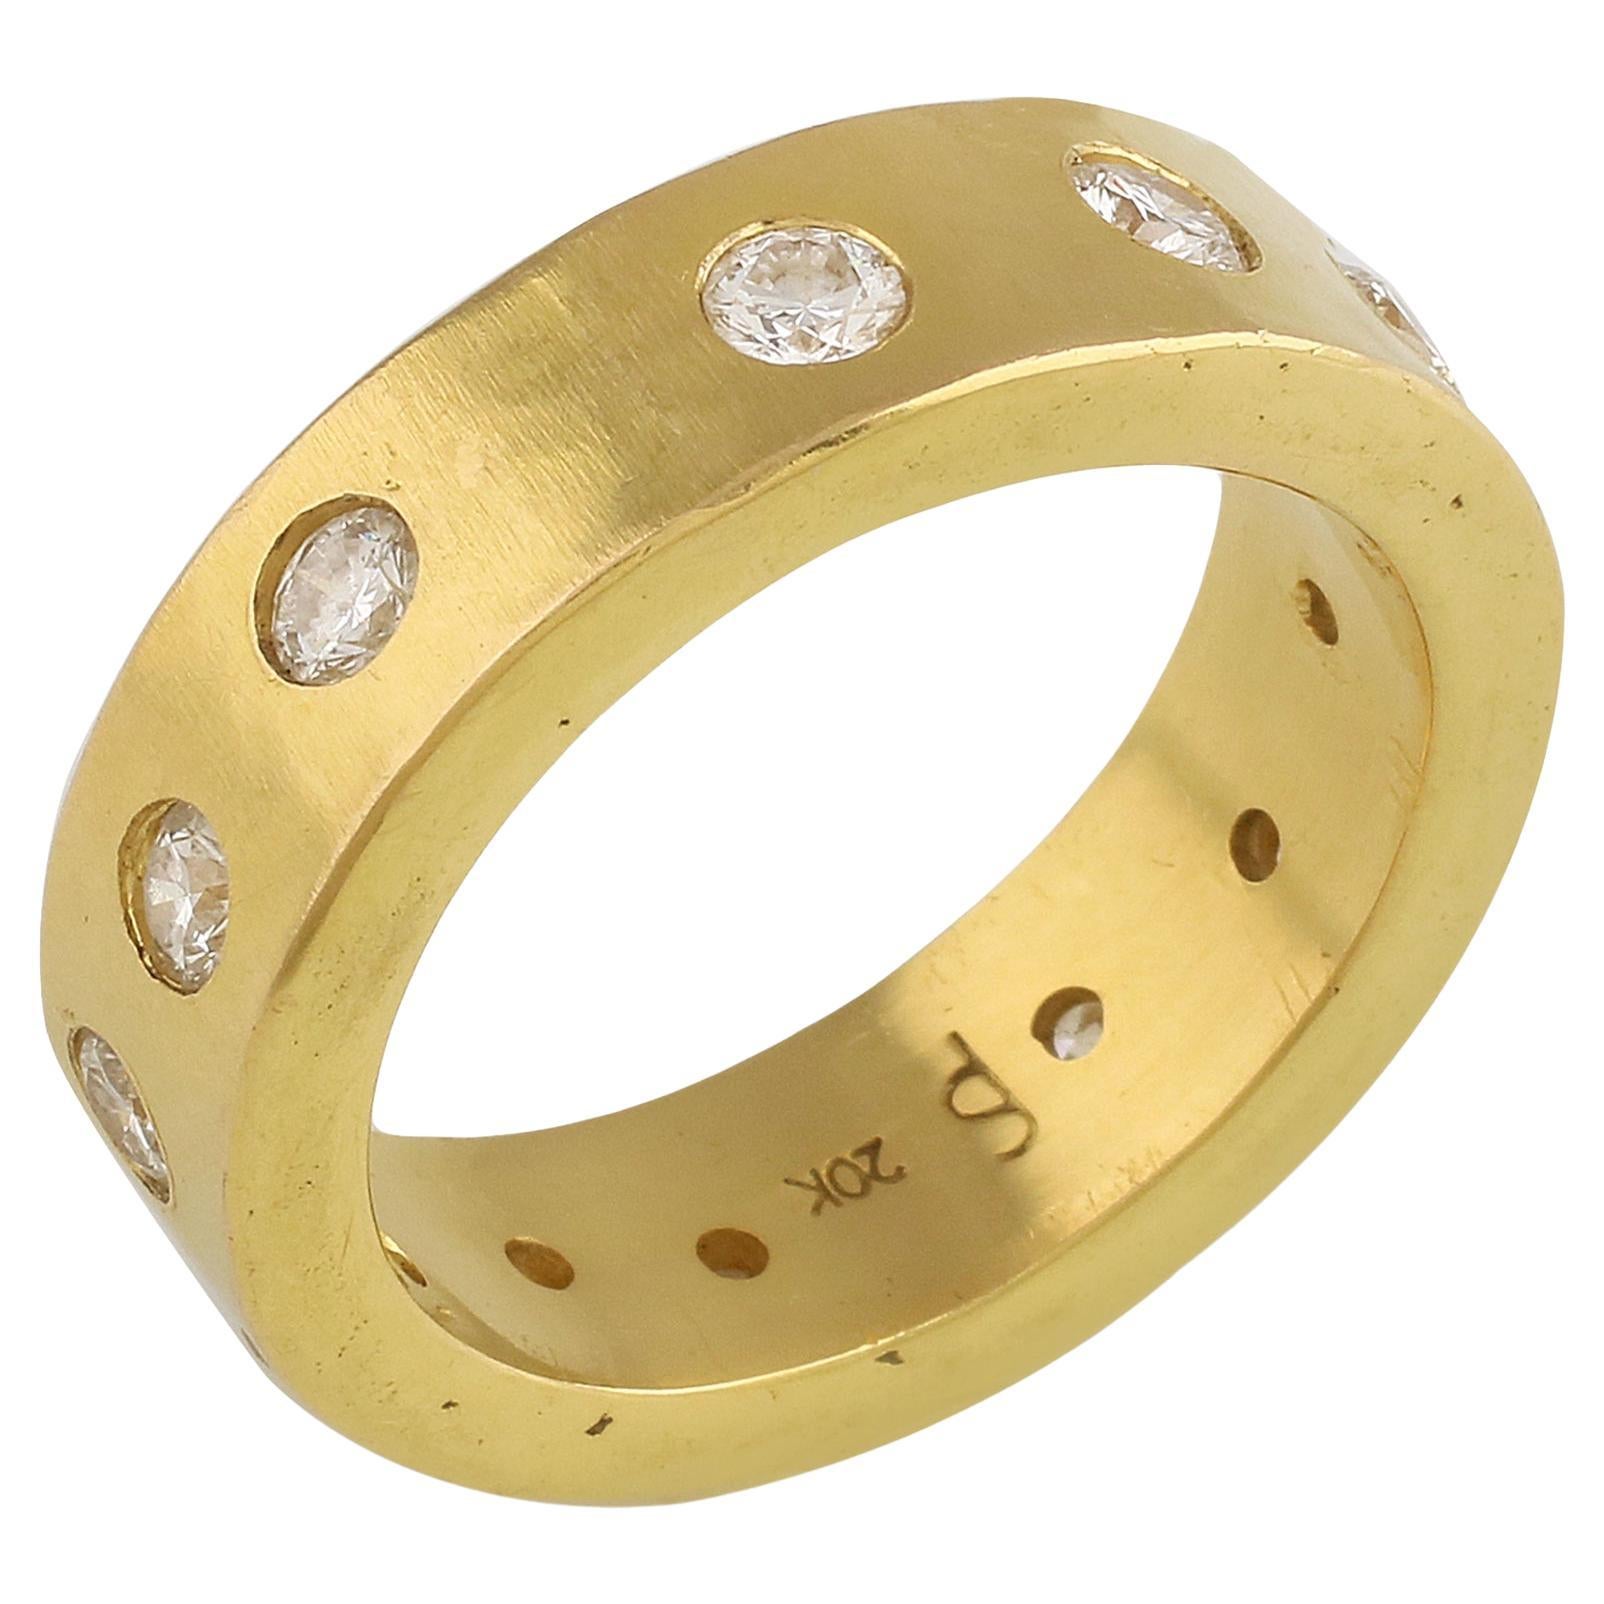 PHILIPPE SPENCER 20K Gold Handgeschmiedeter Ring mit 2,16 Ct. Farblose Diamanten